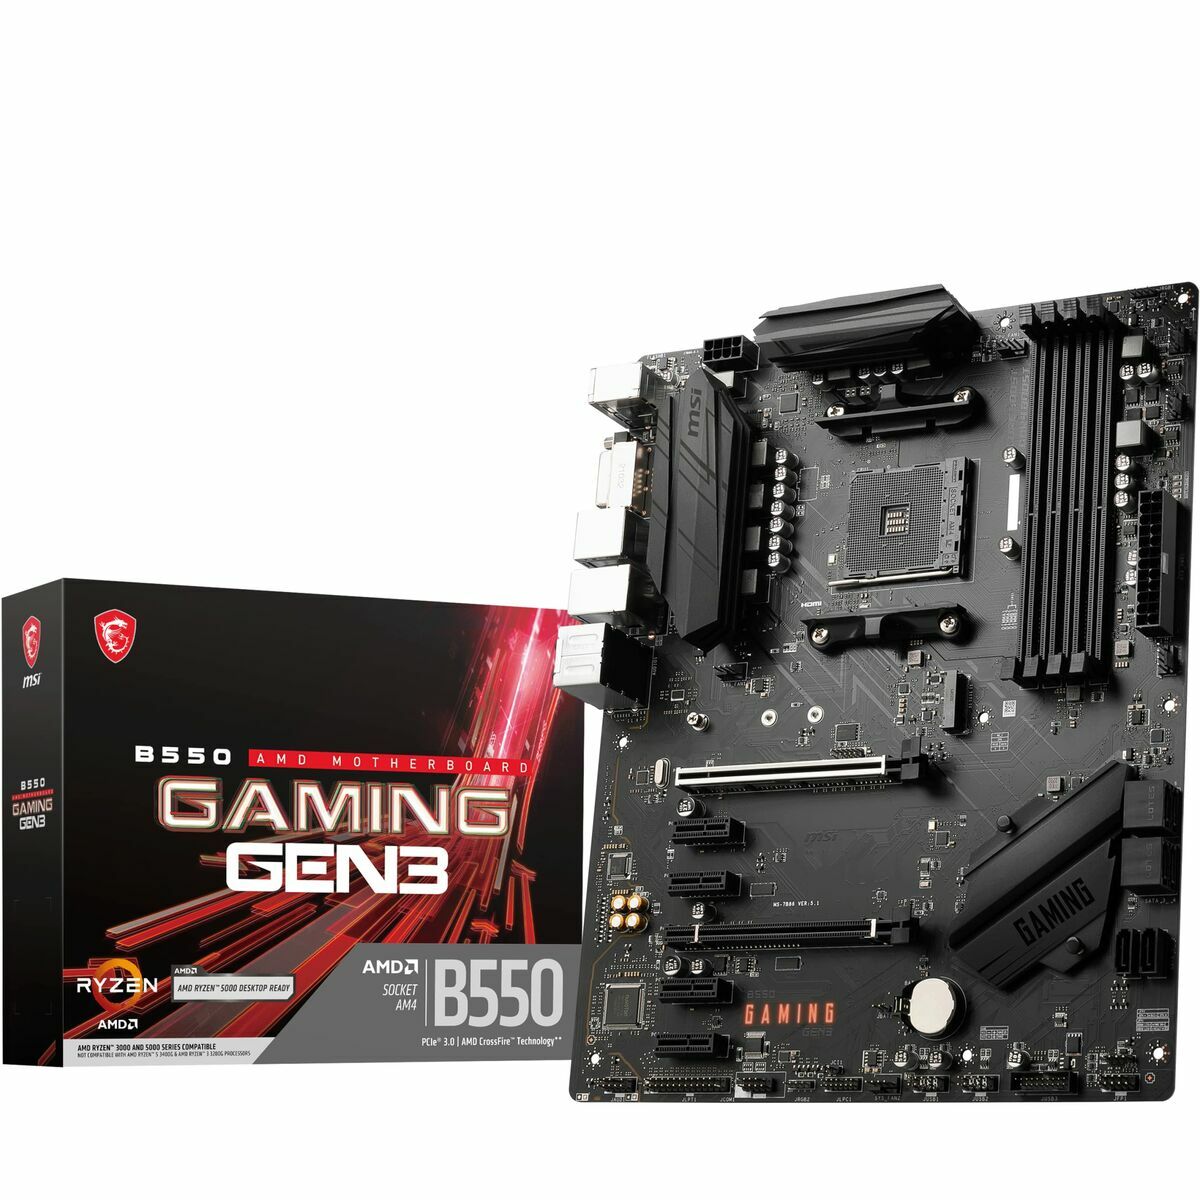 Placa Base MSI B550 GAMING GEN3 AMD B550 AMD AMD AM4